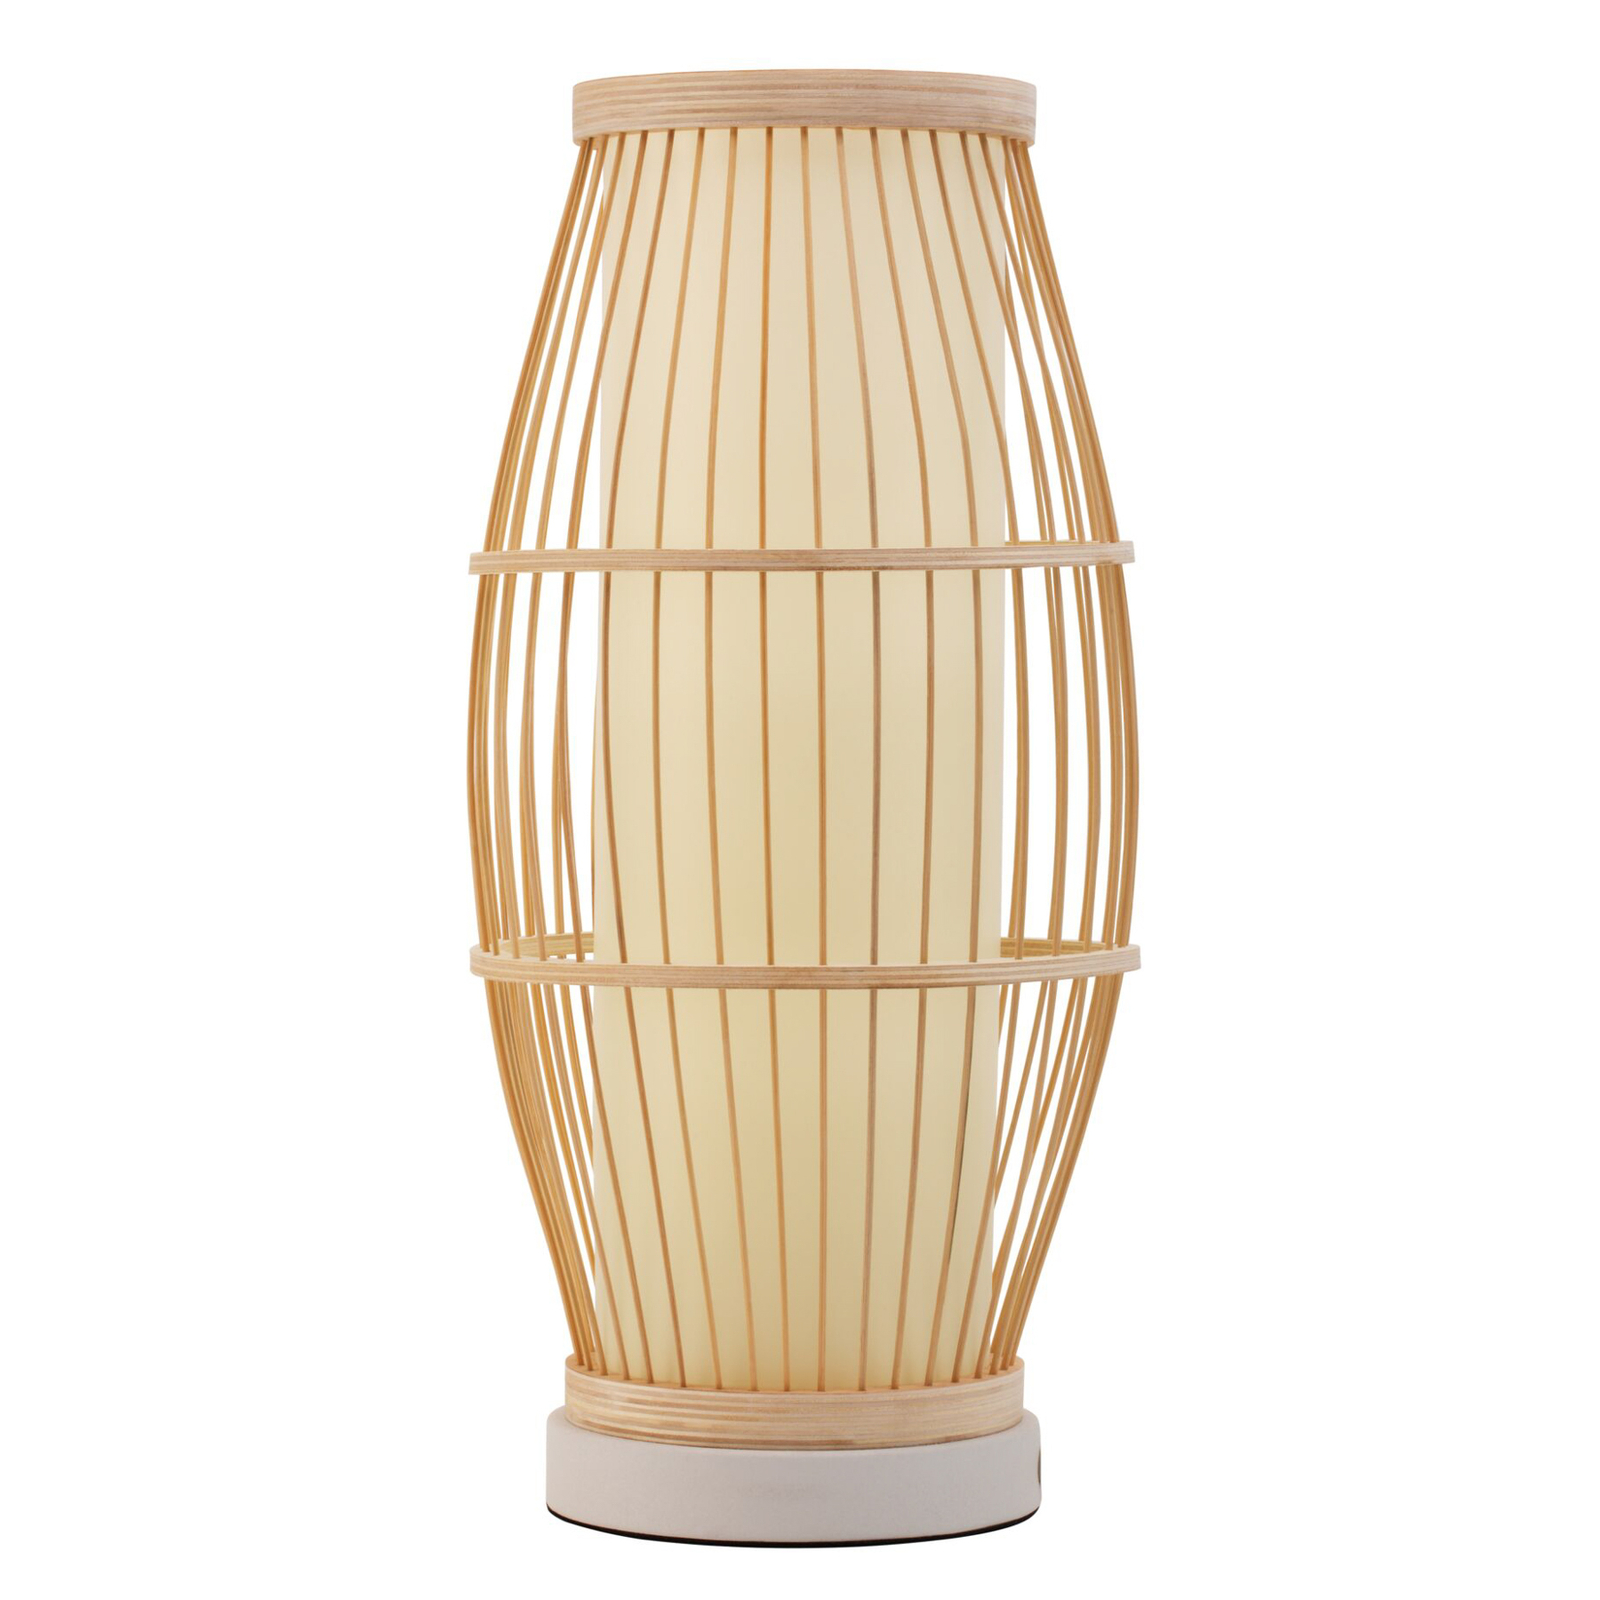 Pauleen Woody Passion bordlampe av bambus